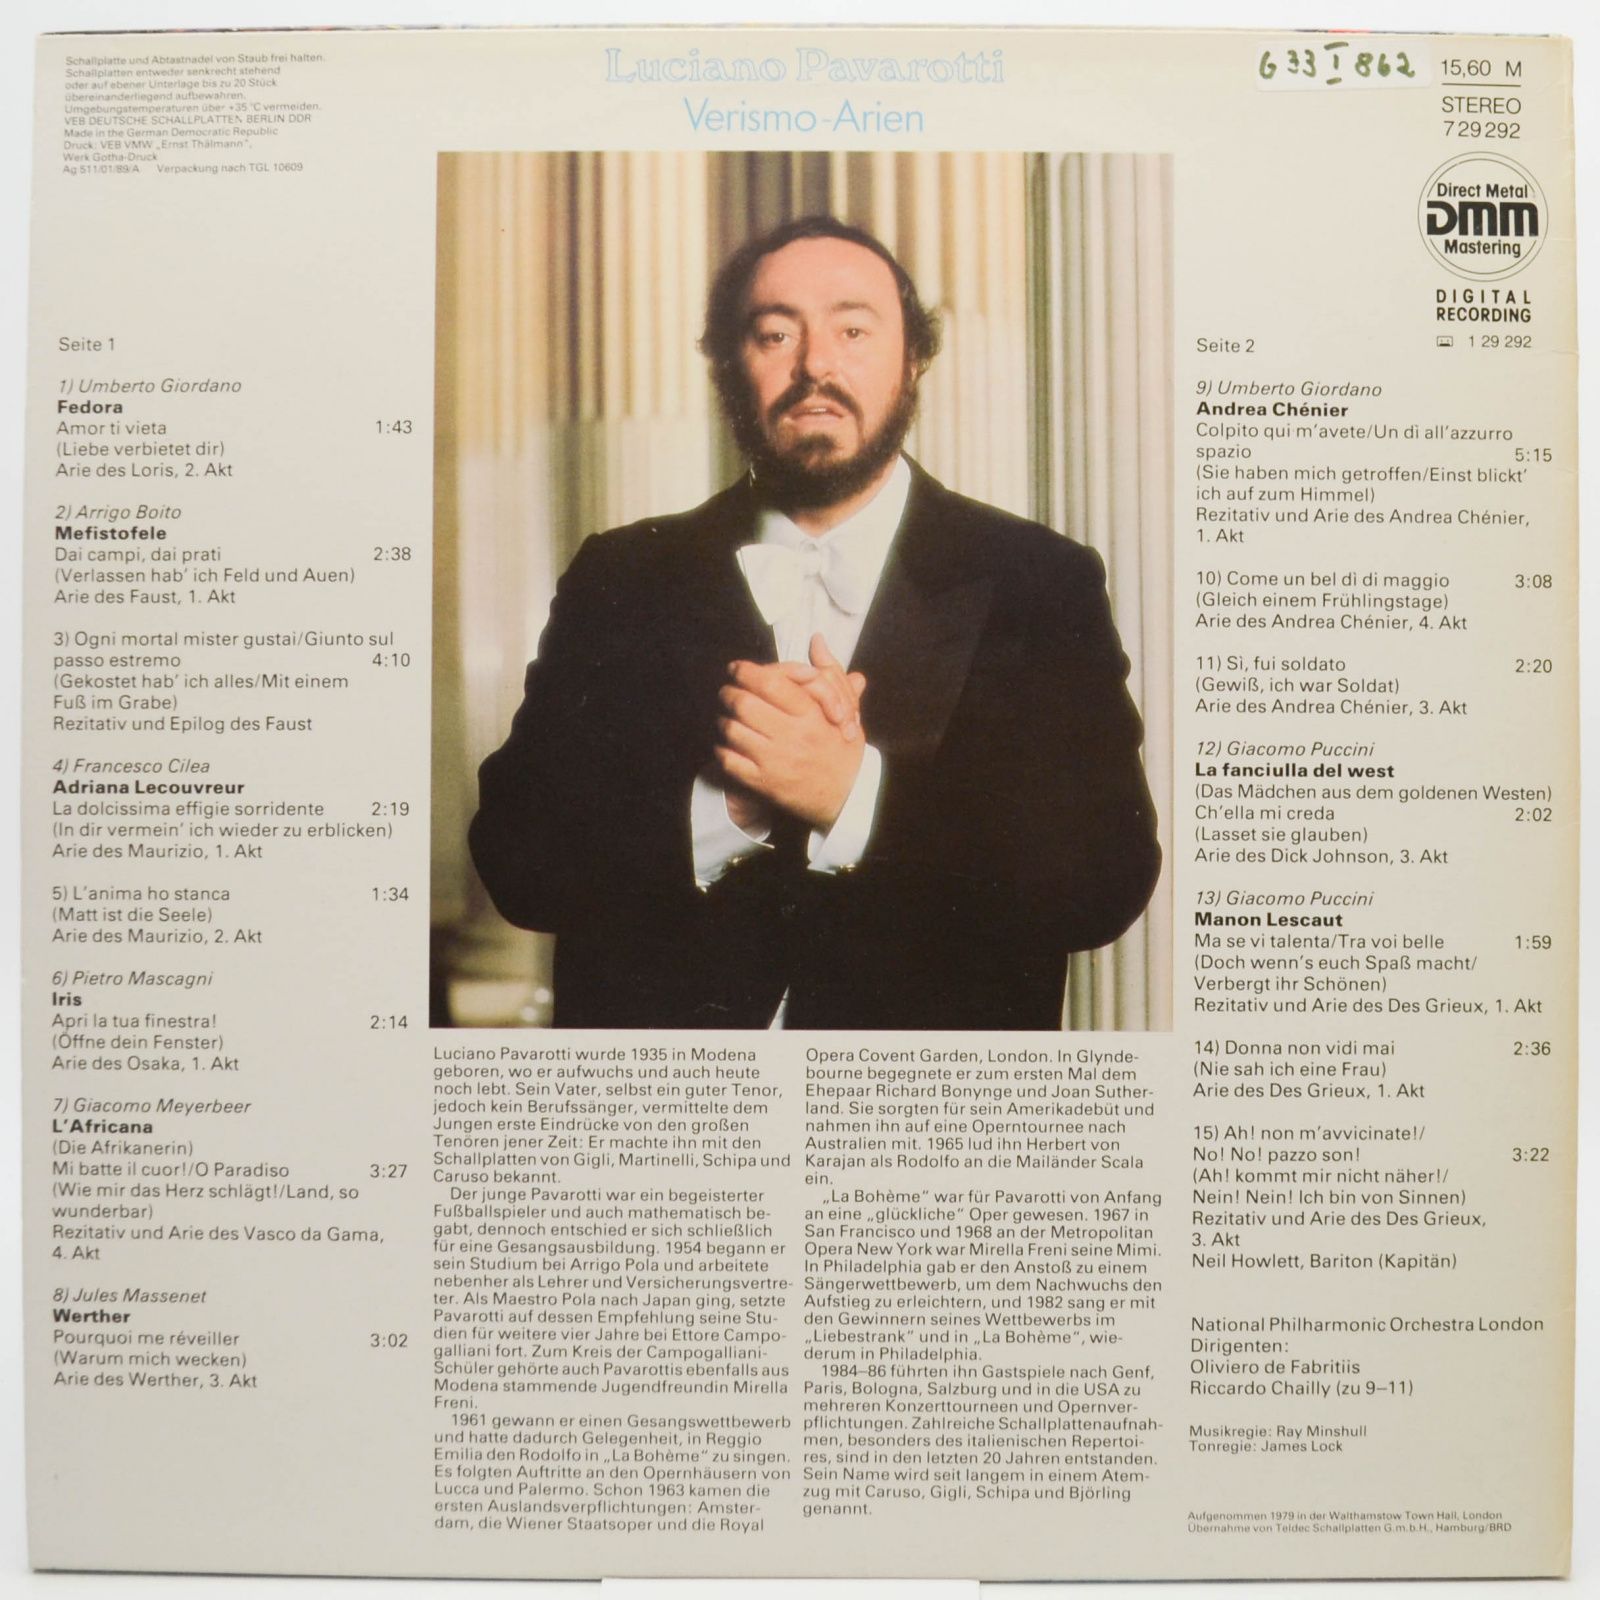 Luciano Pavarotti — Verismo-Arien, 1989